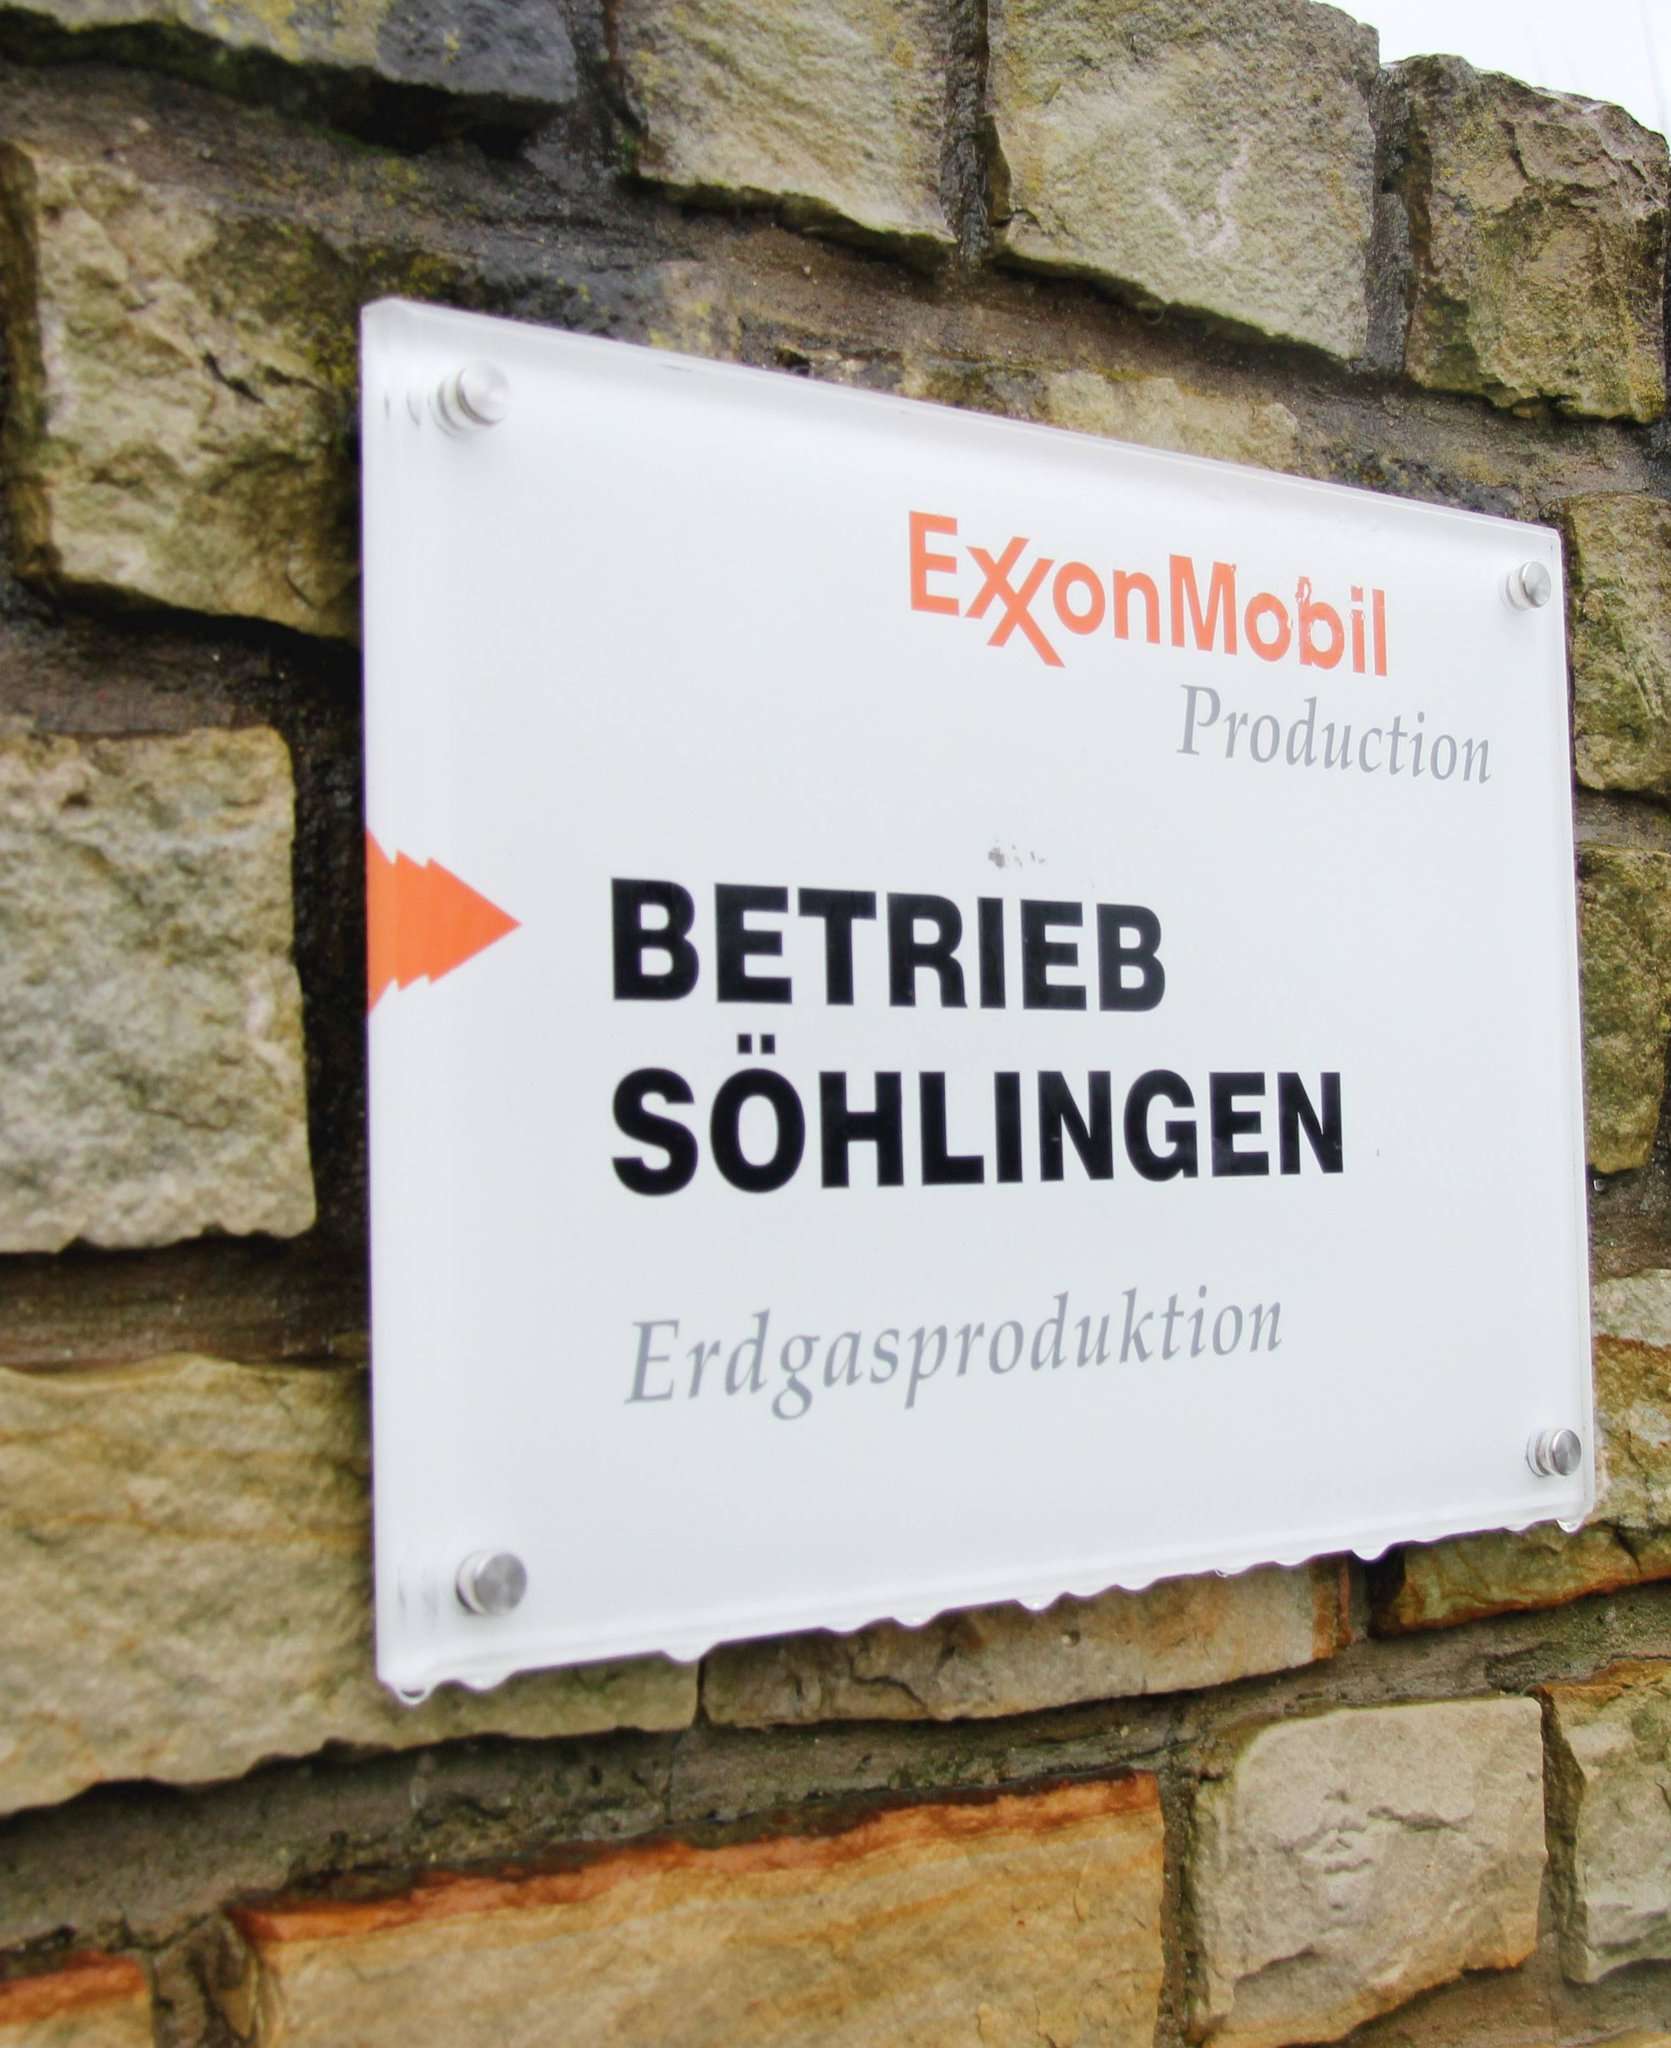 Der Bau einer Reststoffbehandlungsanlage auf dem Exxon-Mobil-Gelände in Söhlingen ist vorerst gestoppt. 